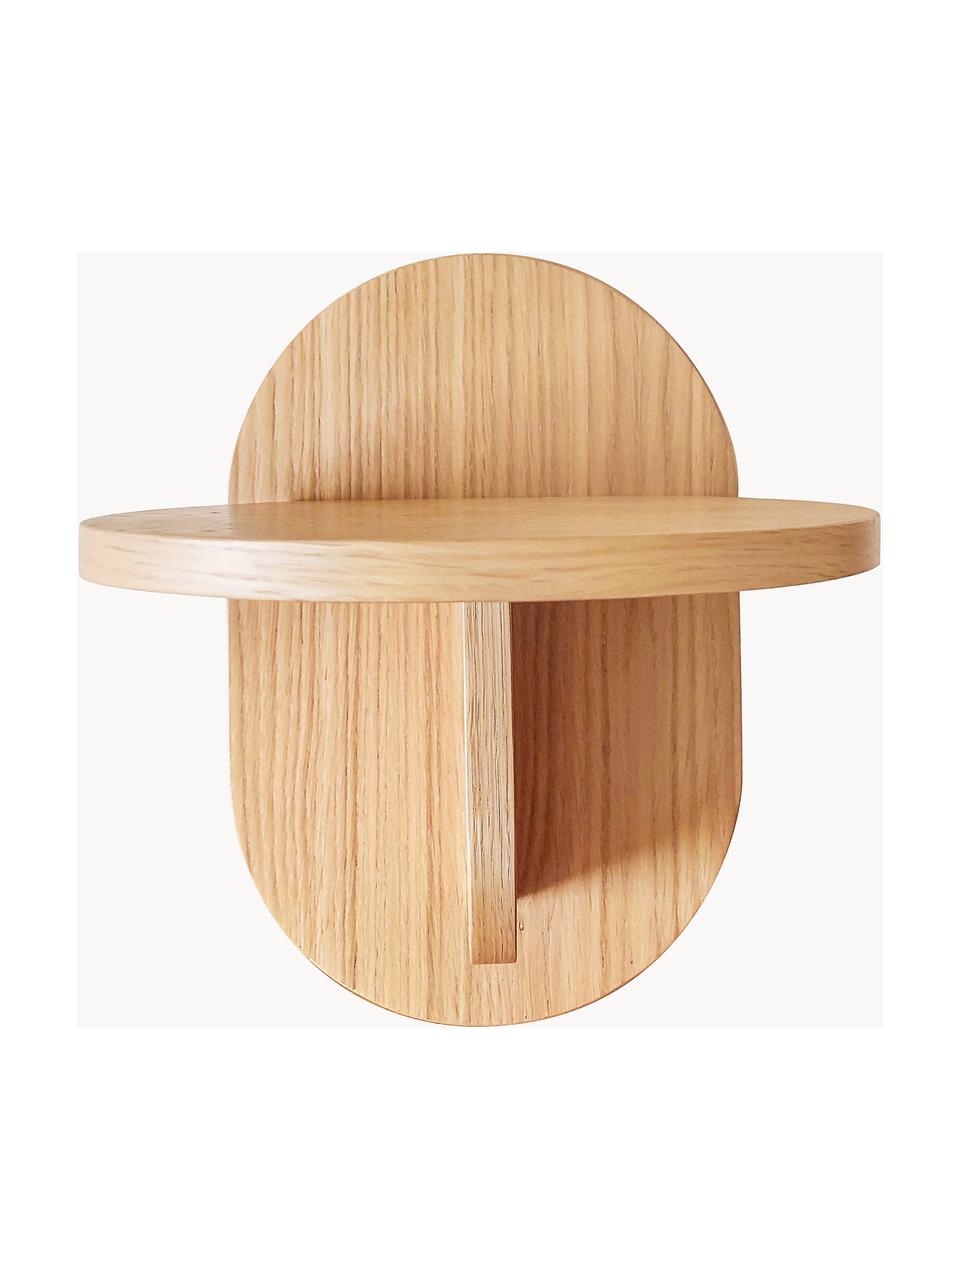 Mensola Oak, Pannello di fibra a media densità (MDF) con finitura in legno di quercia

Questo prodotto è realizzato con legno di provenienza sostenibile e certificato FSC®, Legno, Larg. 20 x Alt. 30 cm